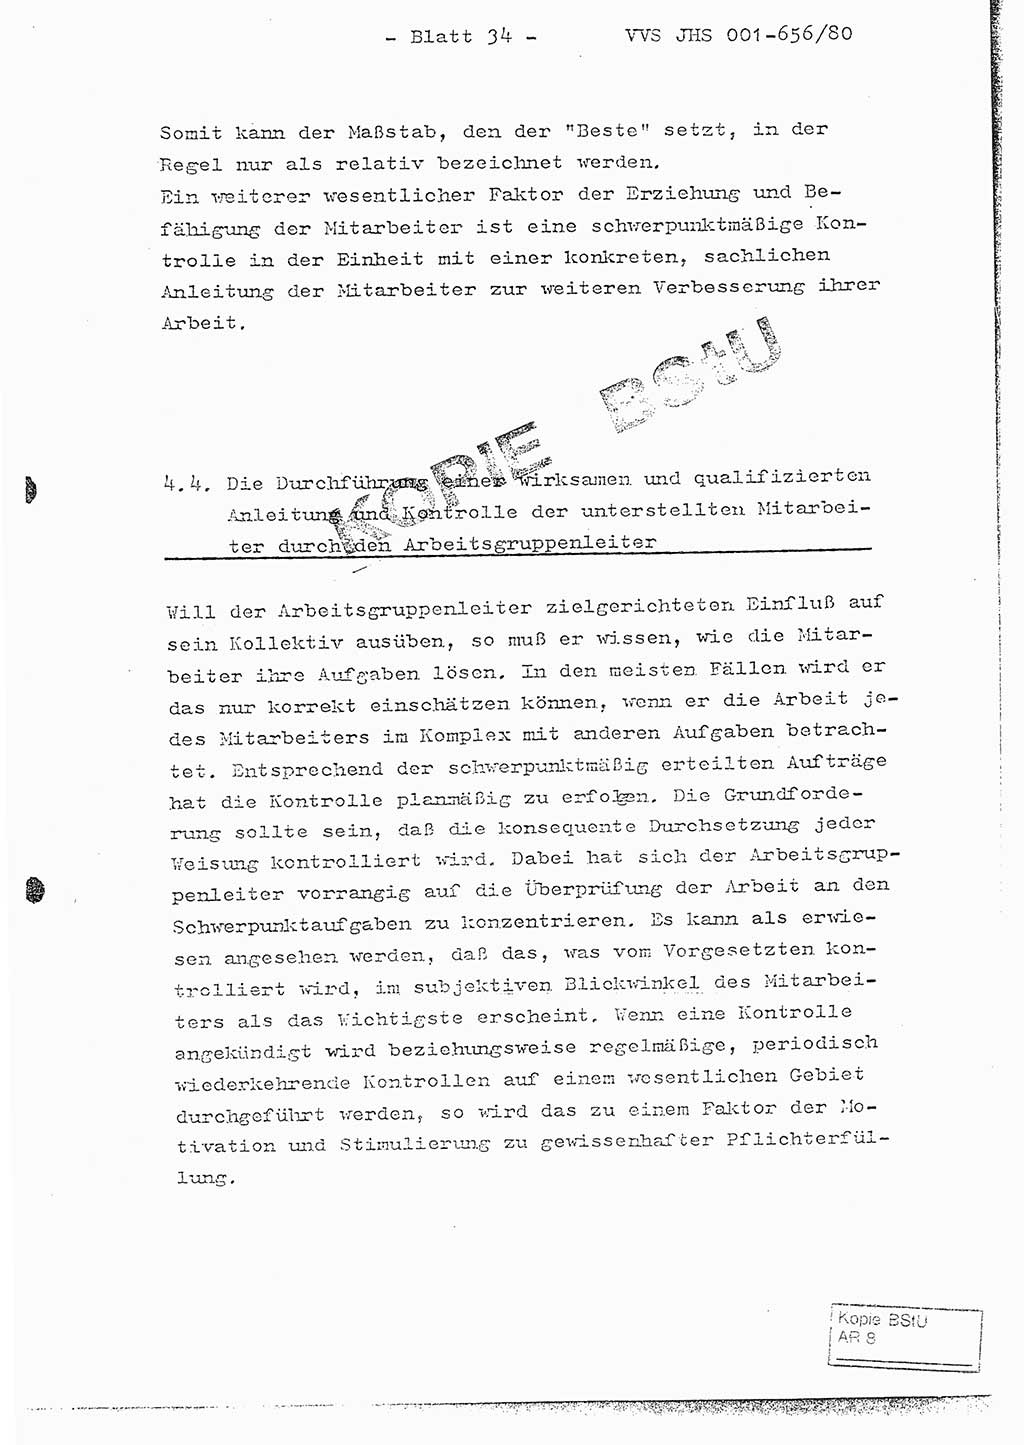 Fachschulabschlußarbeit Unterleutnant Christian Kätzel (Abt. ⅩⅣ), Ministerium für Staatssicherheit (MfS) [Deutsche Demokratische Republik (DDR)], Juristische Hochschule (JHS), Vertrauliche Verschlußsache (VVS) 001-656/80, Potsdam 1980, Blatt 34 (FS-Abschl.-Arb. MfS DDR JHS VVS 001-656/80 1980, Bl. 34)